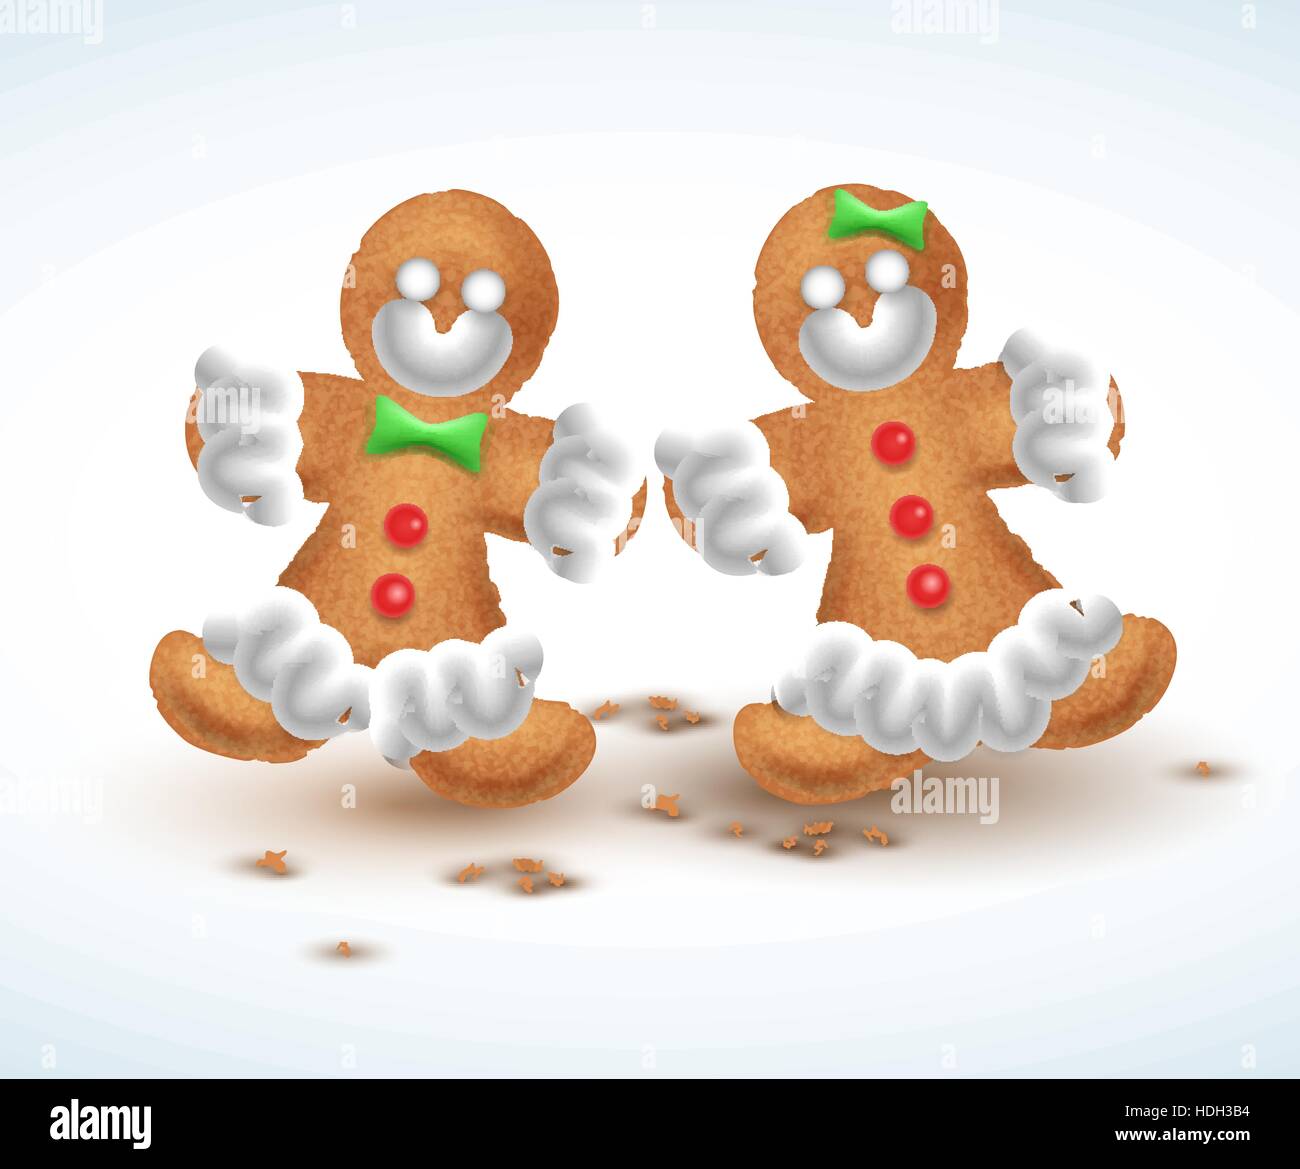 Gingerbread cookies. vector illustration pour la nouvelle année s, Noël, vacances d'hiver, la cuisine, réveillon, nourriture, Silvester, etc Illustration de Vecteur